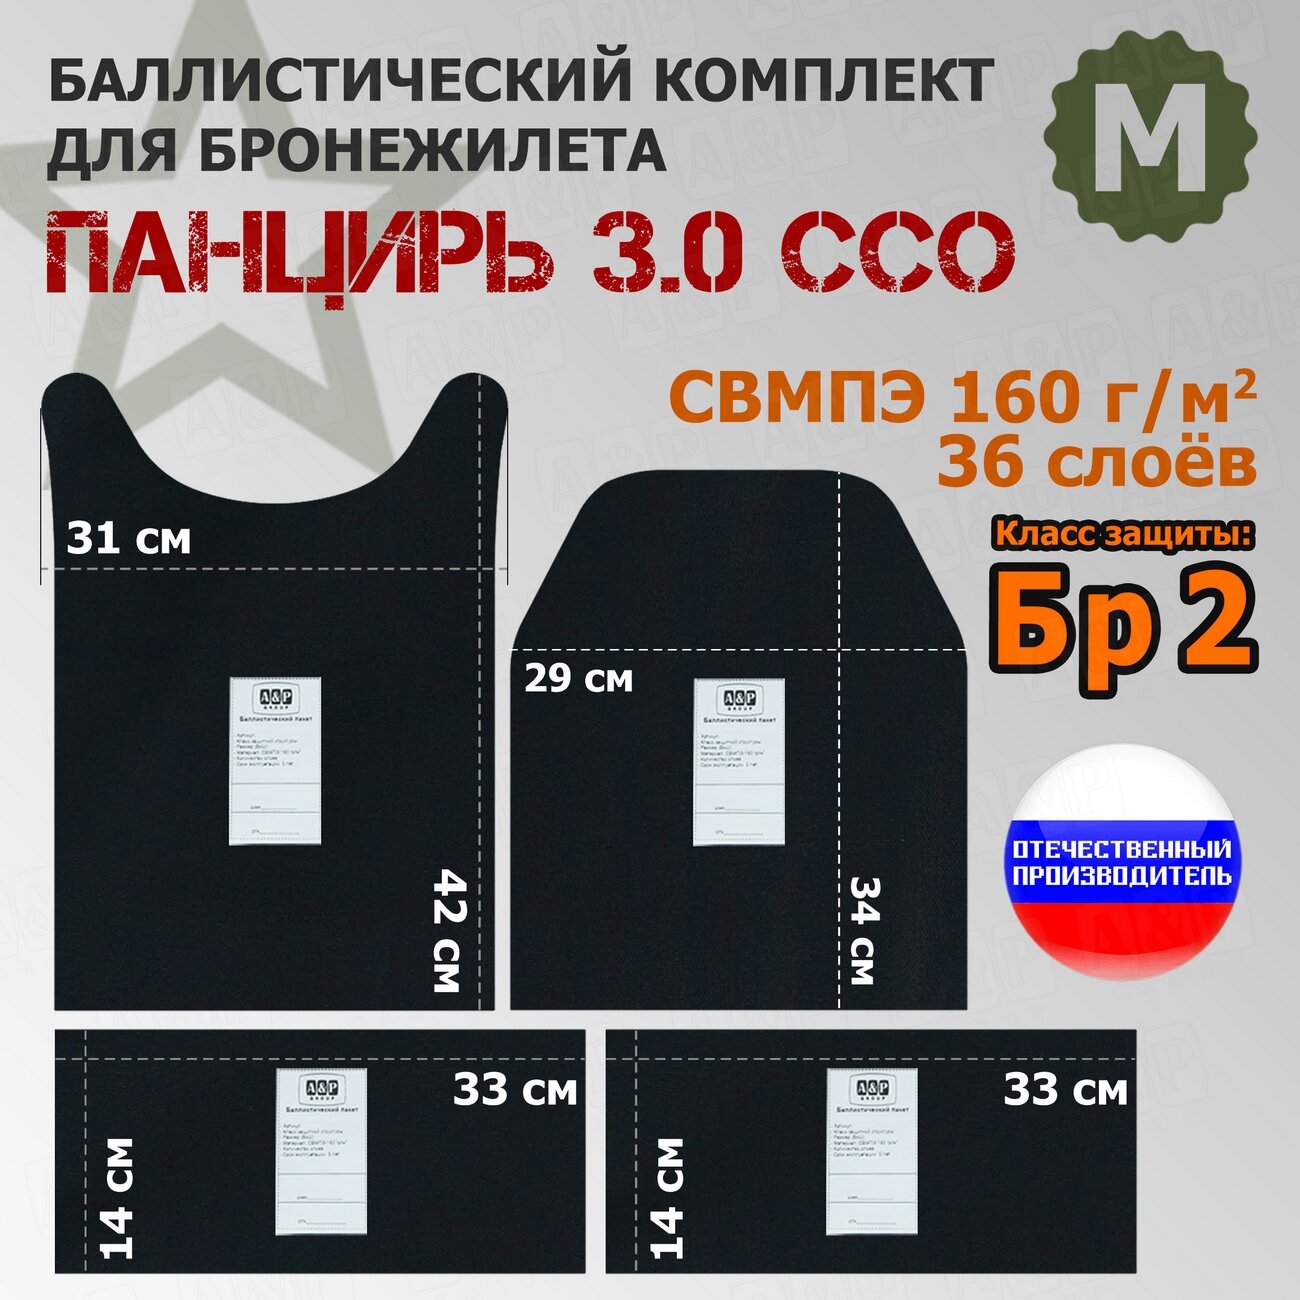 Комплект баллистических пакетов для плитника "Панцирь 3.0" (размер М) от ССО. Класс защитной структуры Бр 2.